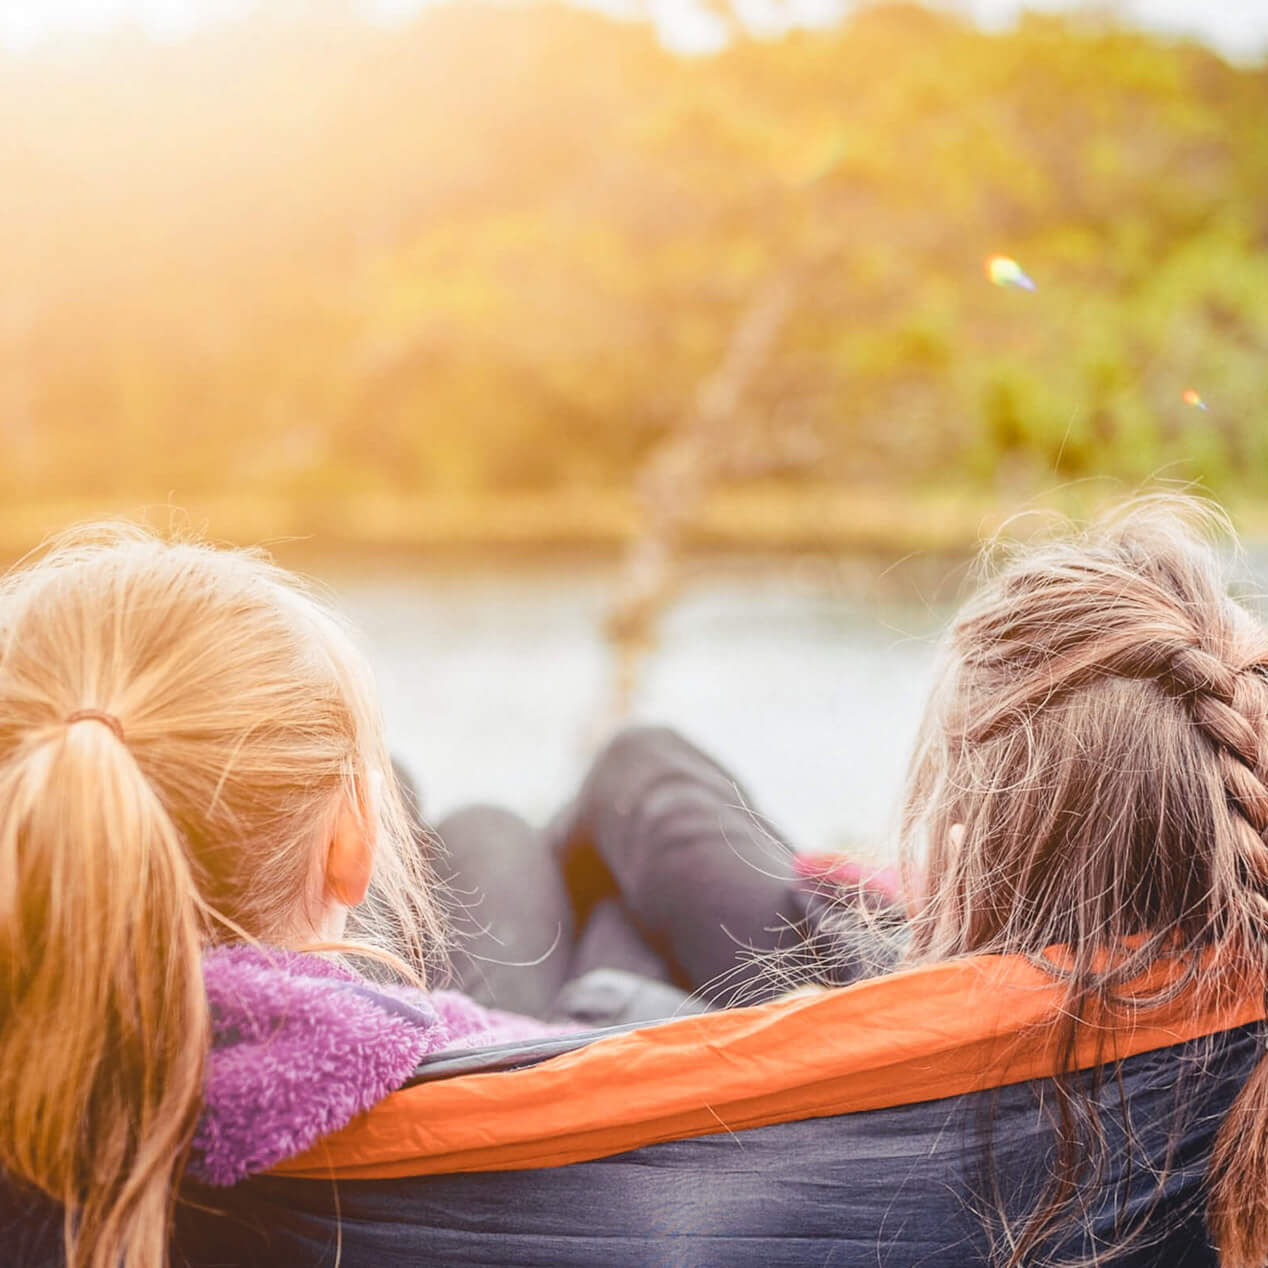 Zwei Mädchen liegen mit dem Hinterkopf zur Kamera in einer Hängematte. Sie schauen direkt auf einen See und die Sonne scheint.